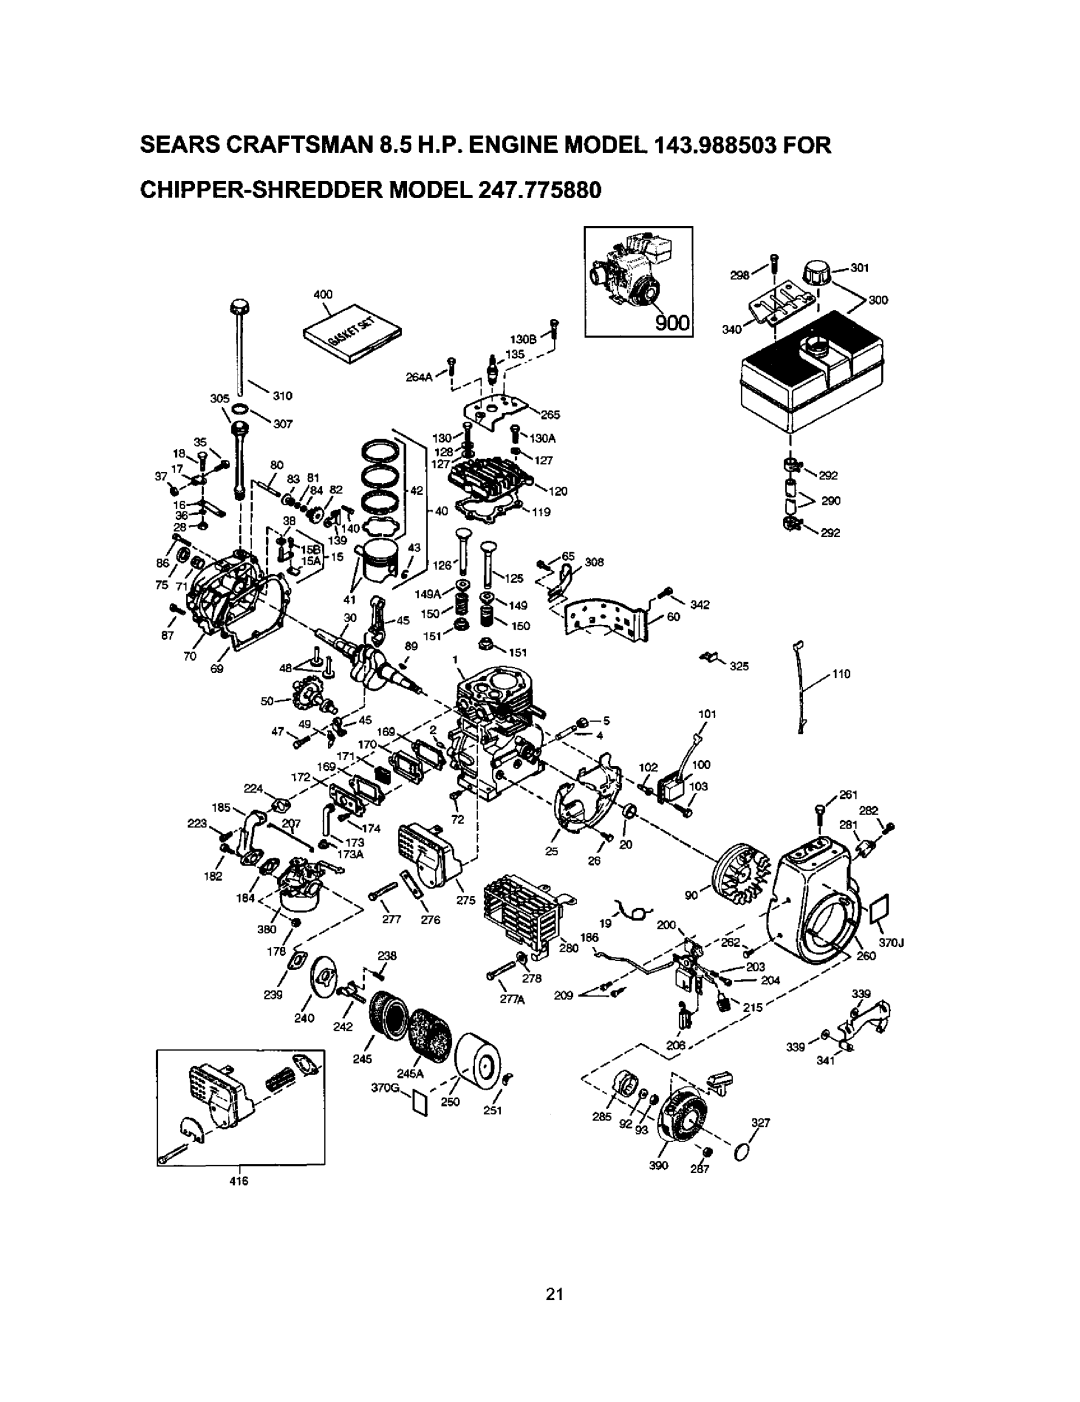 Craftsman 247.77588O owner manual Chipper-Shreddermodel, 4OO 3O5 35 2g0, 87 7O 69 